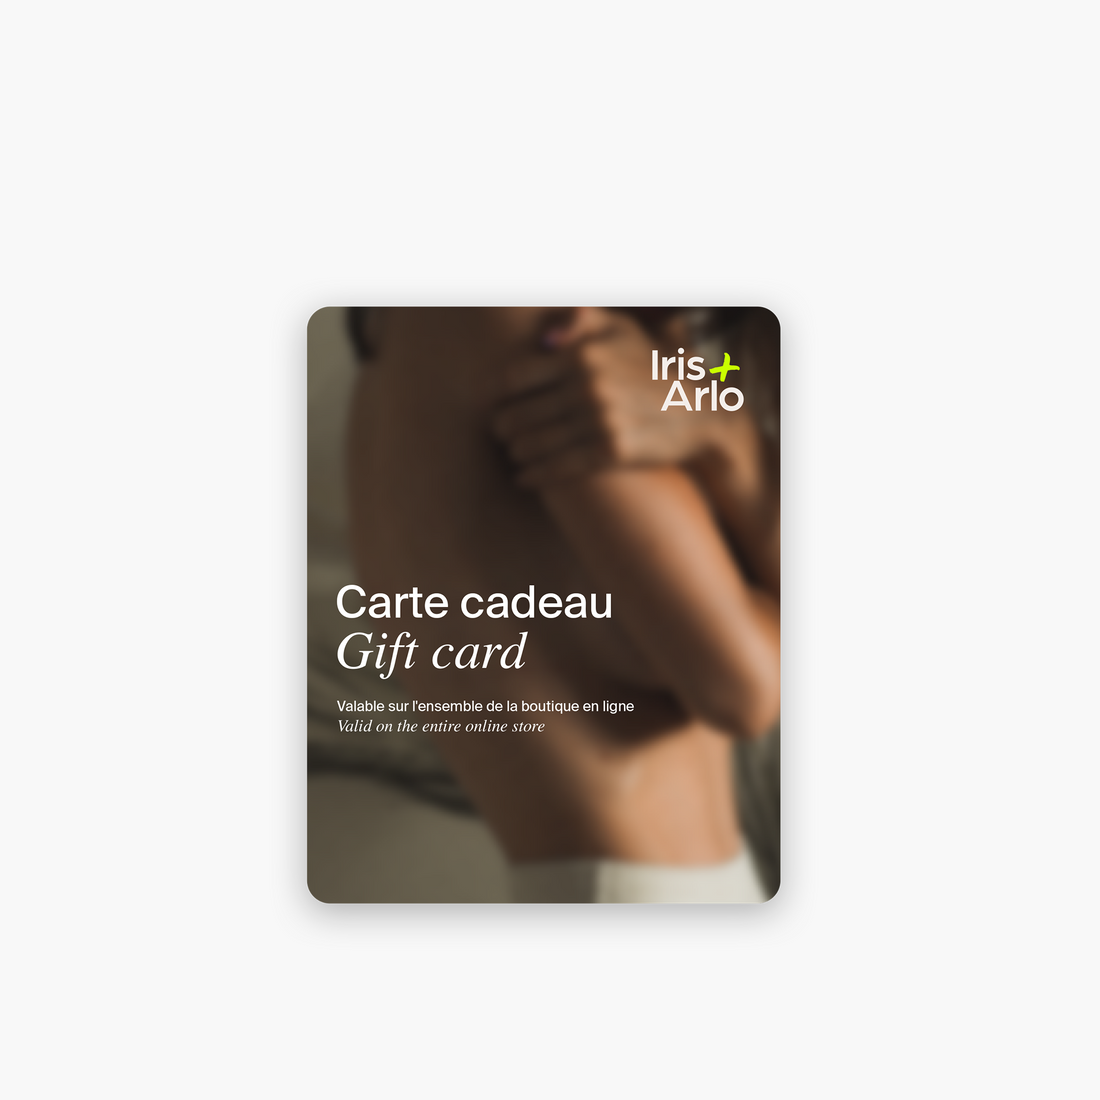 Iris + Arlo Gift Card